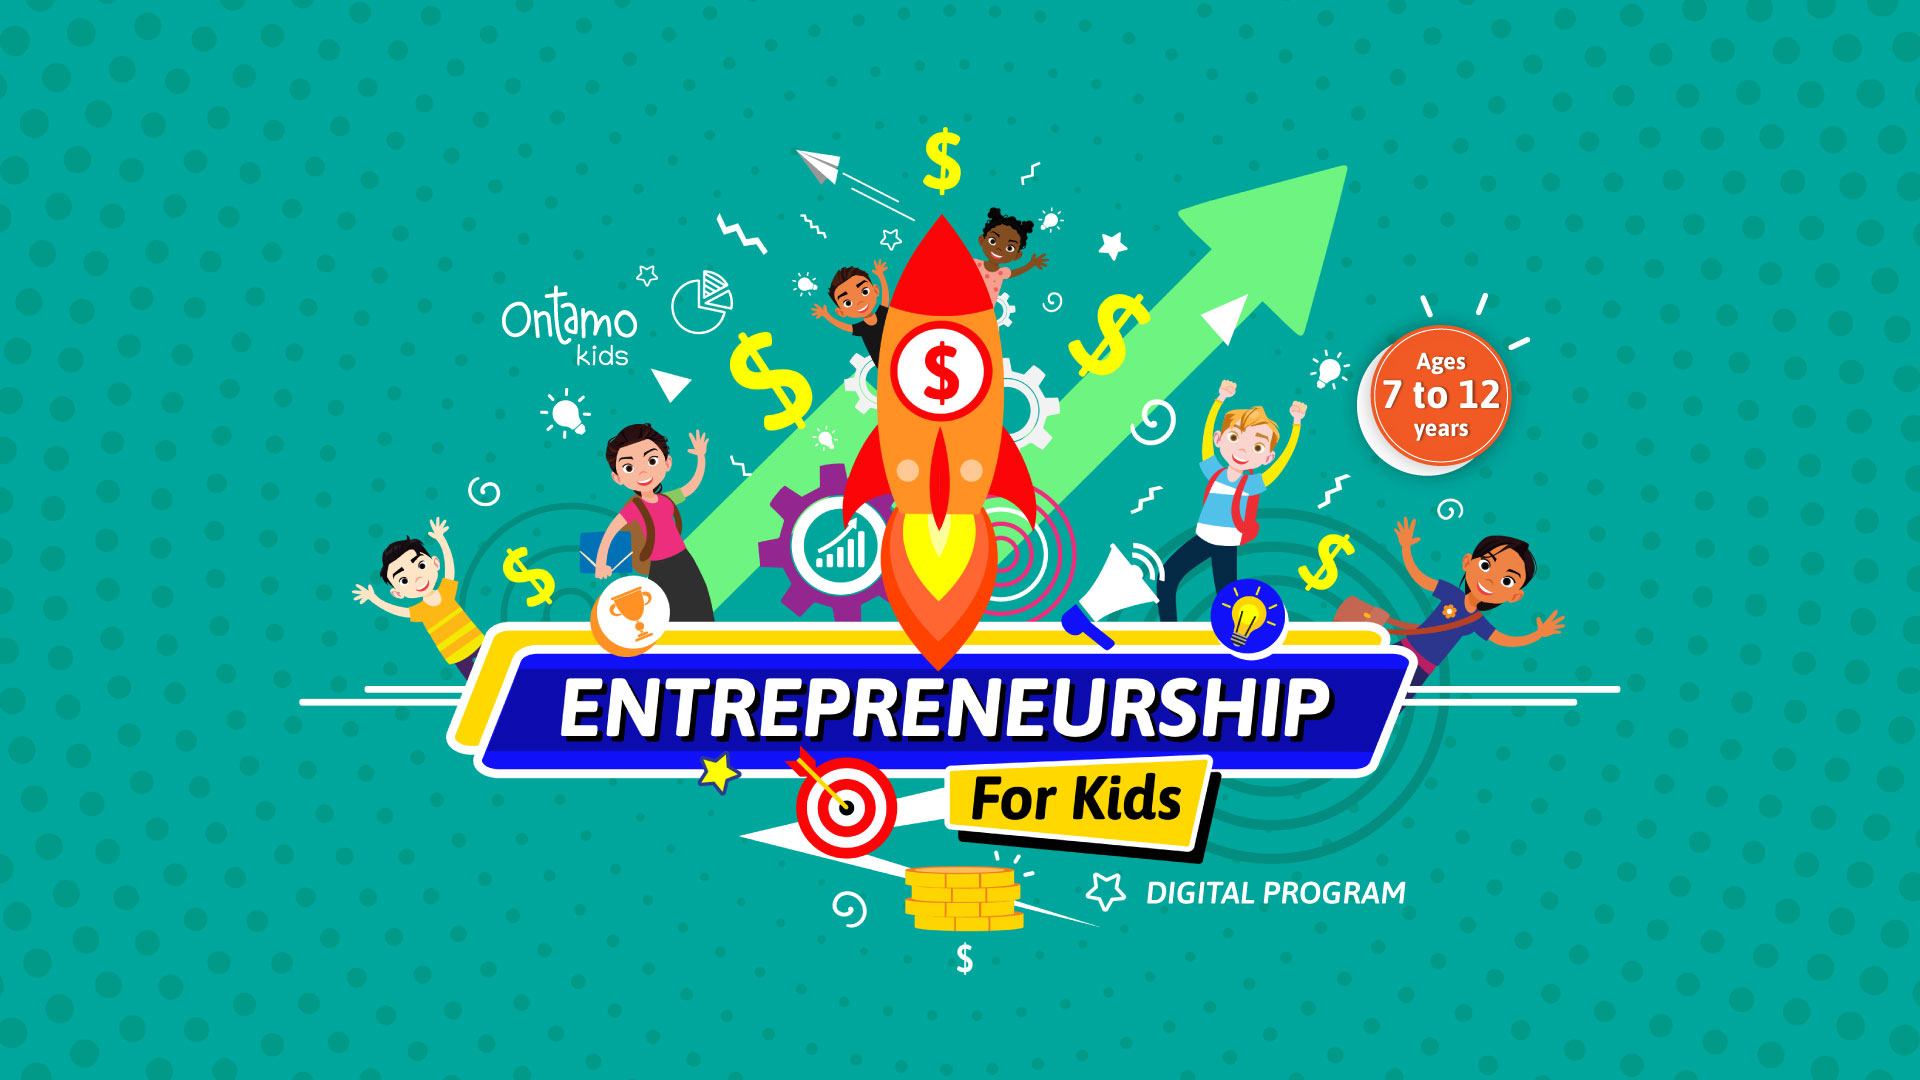 Entrepreneuship For Kids